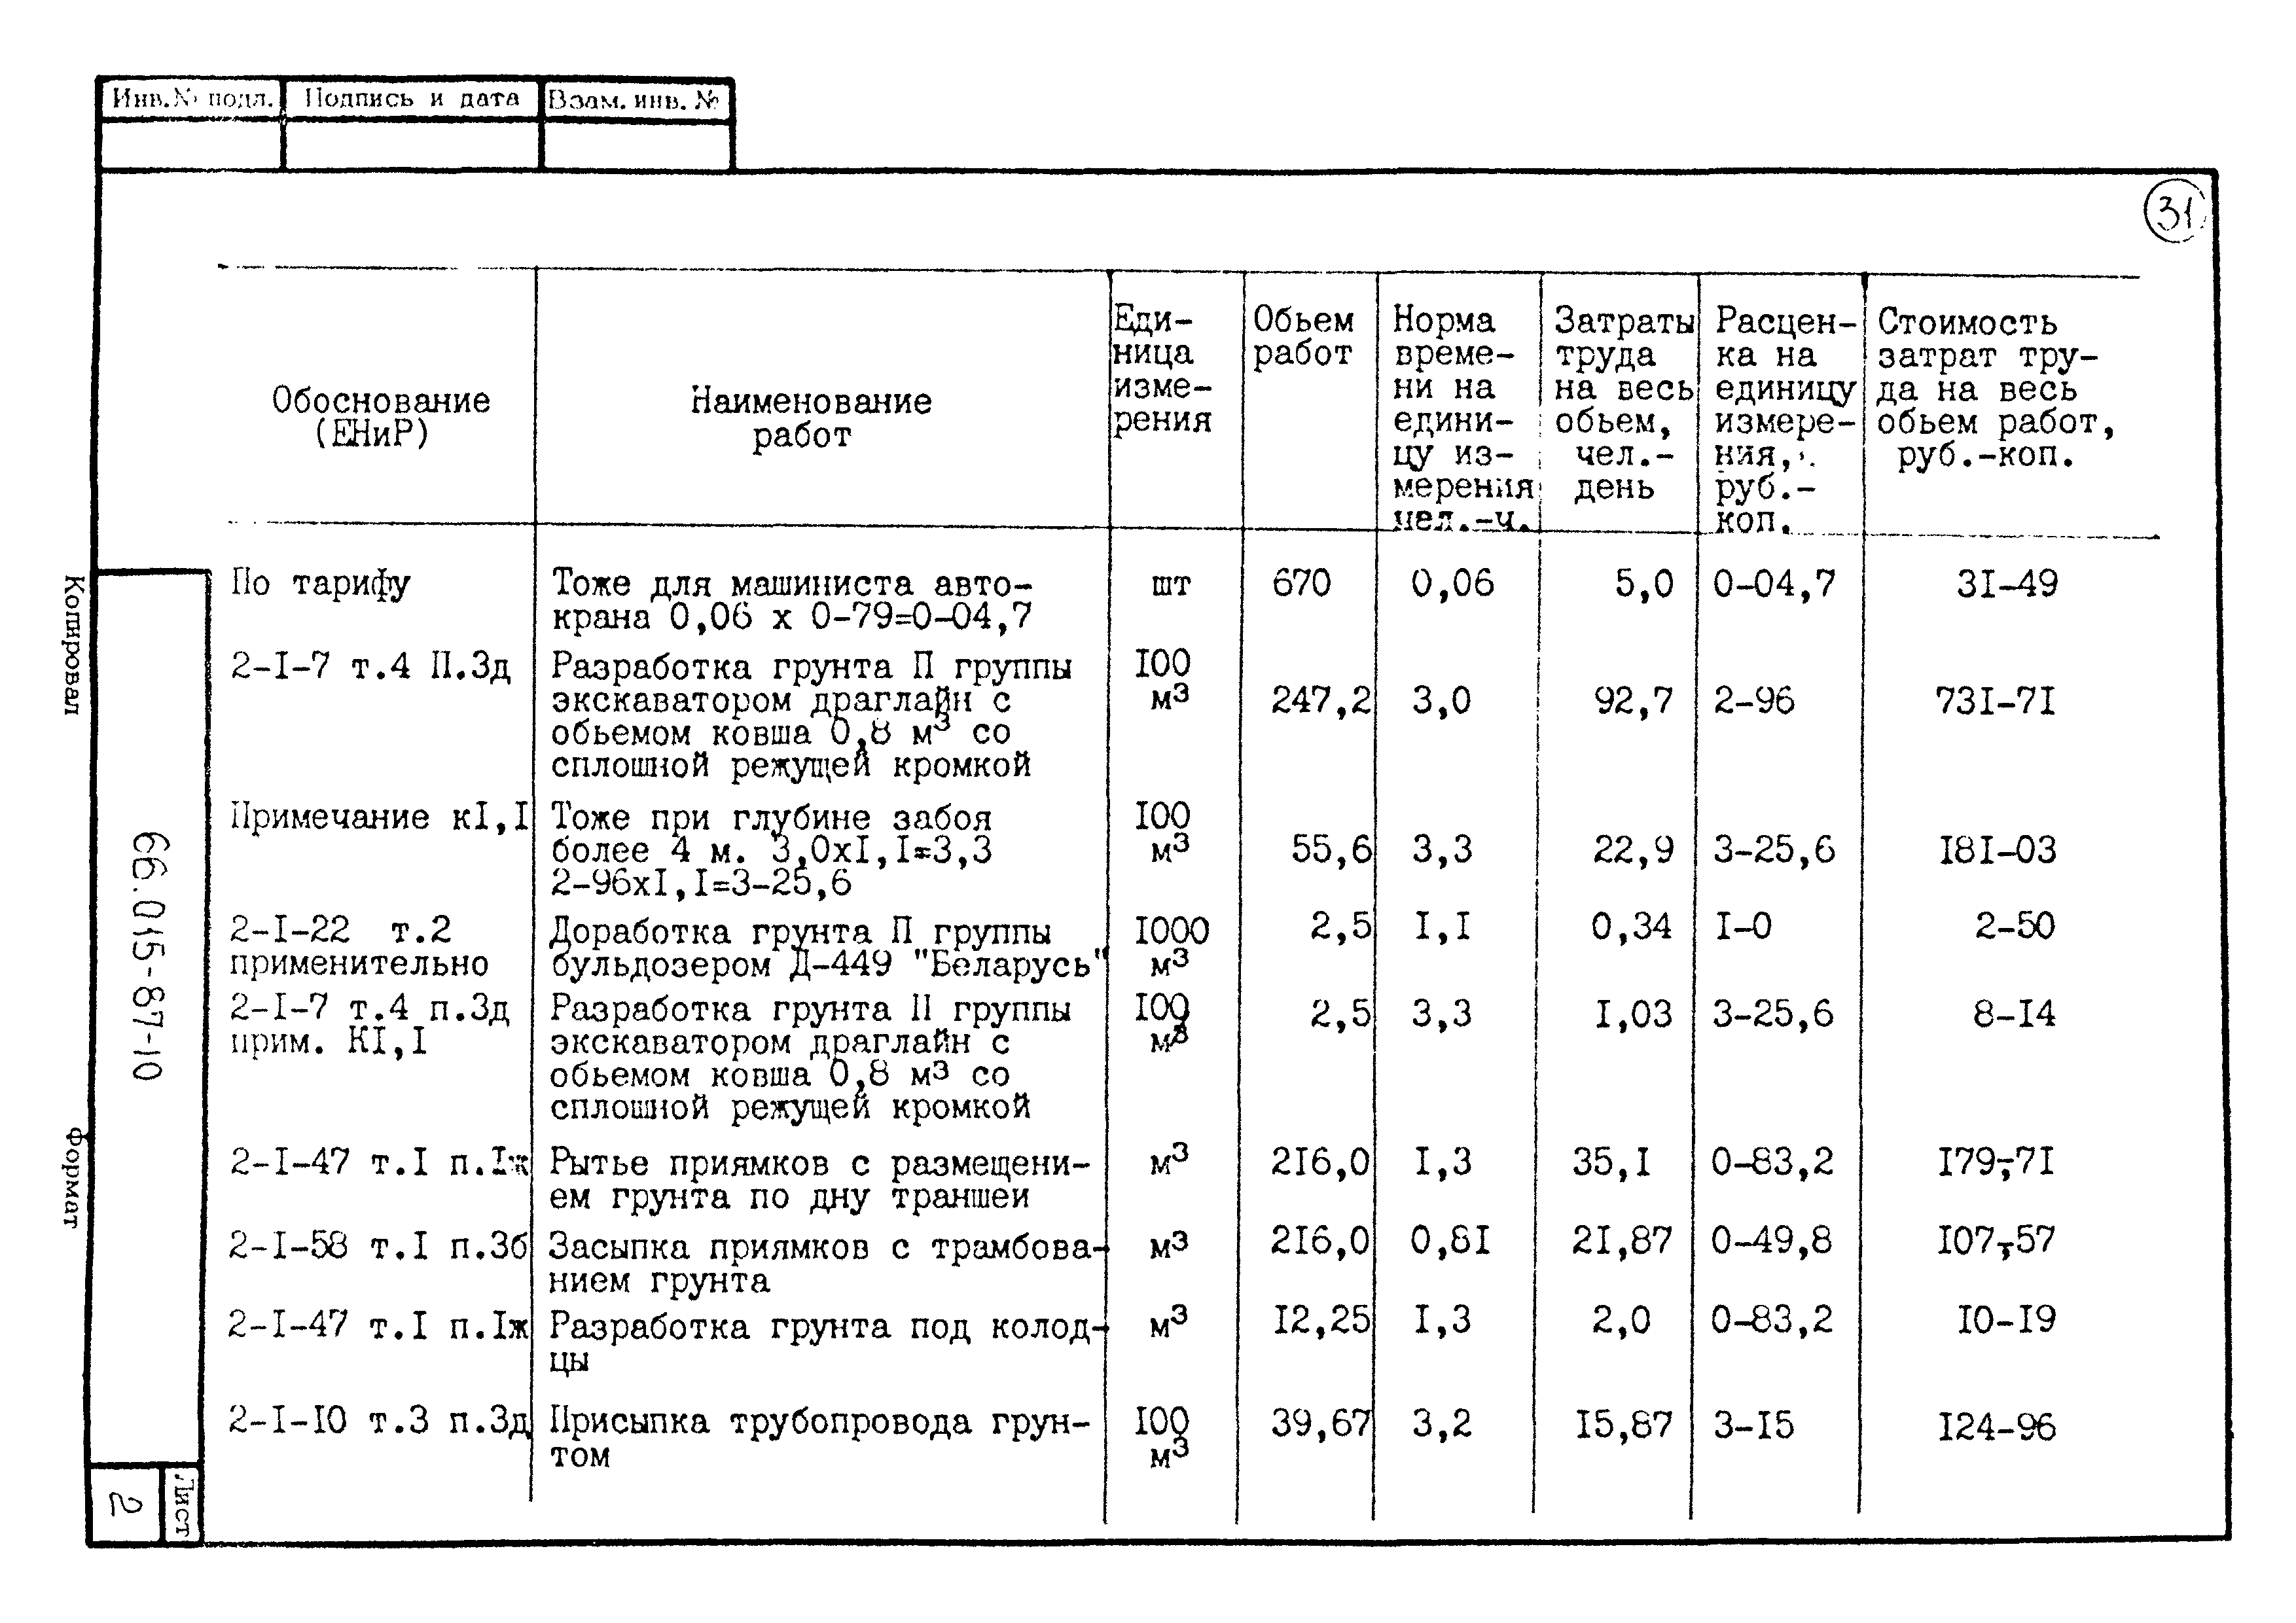 ТК 66.015-87